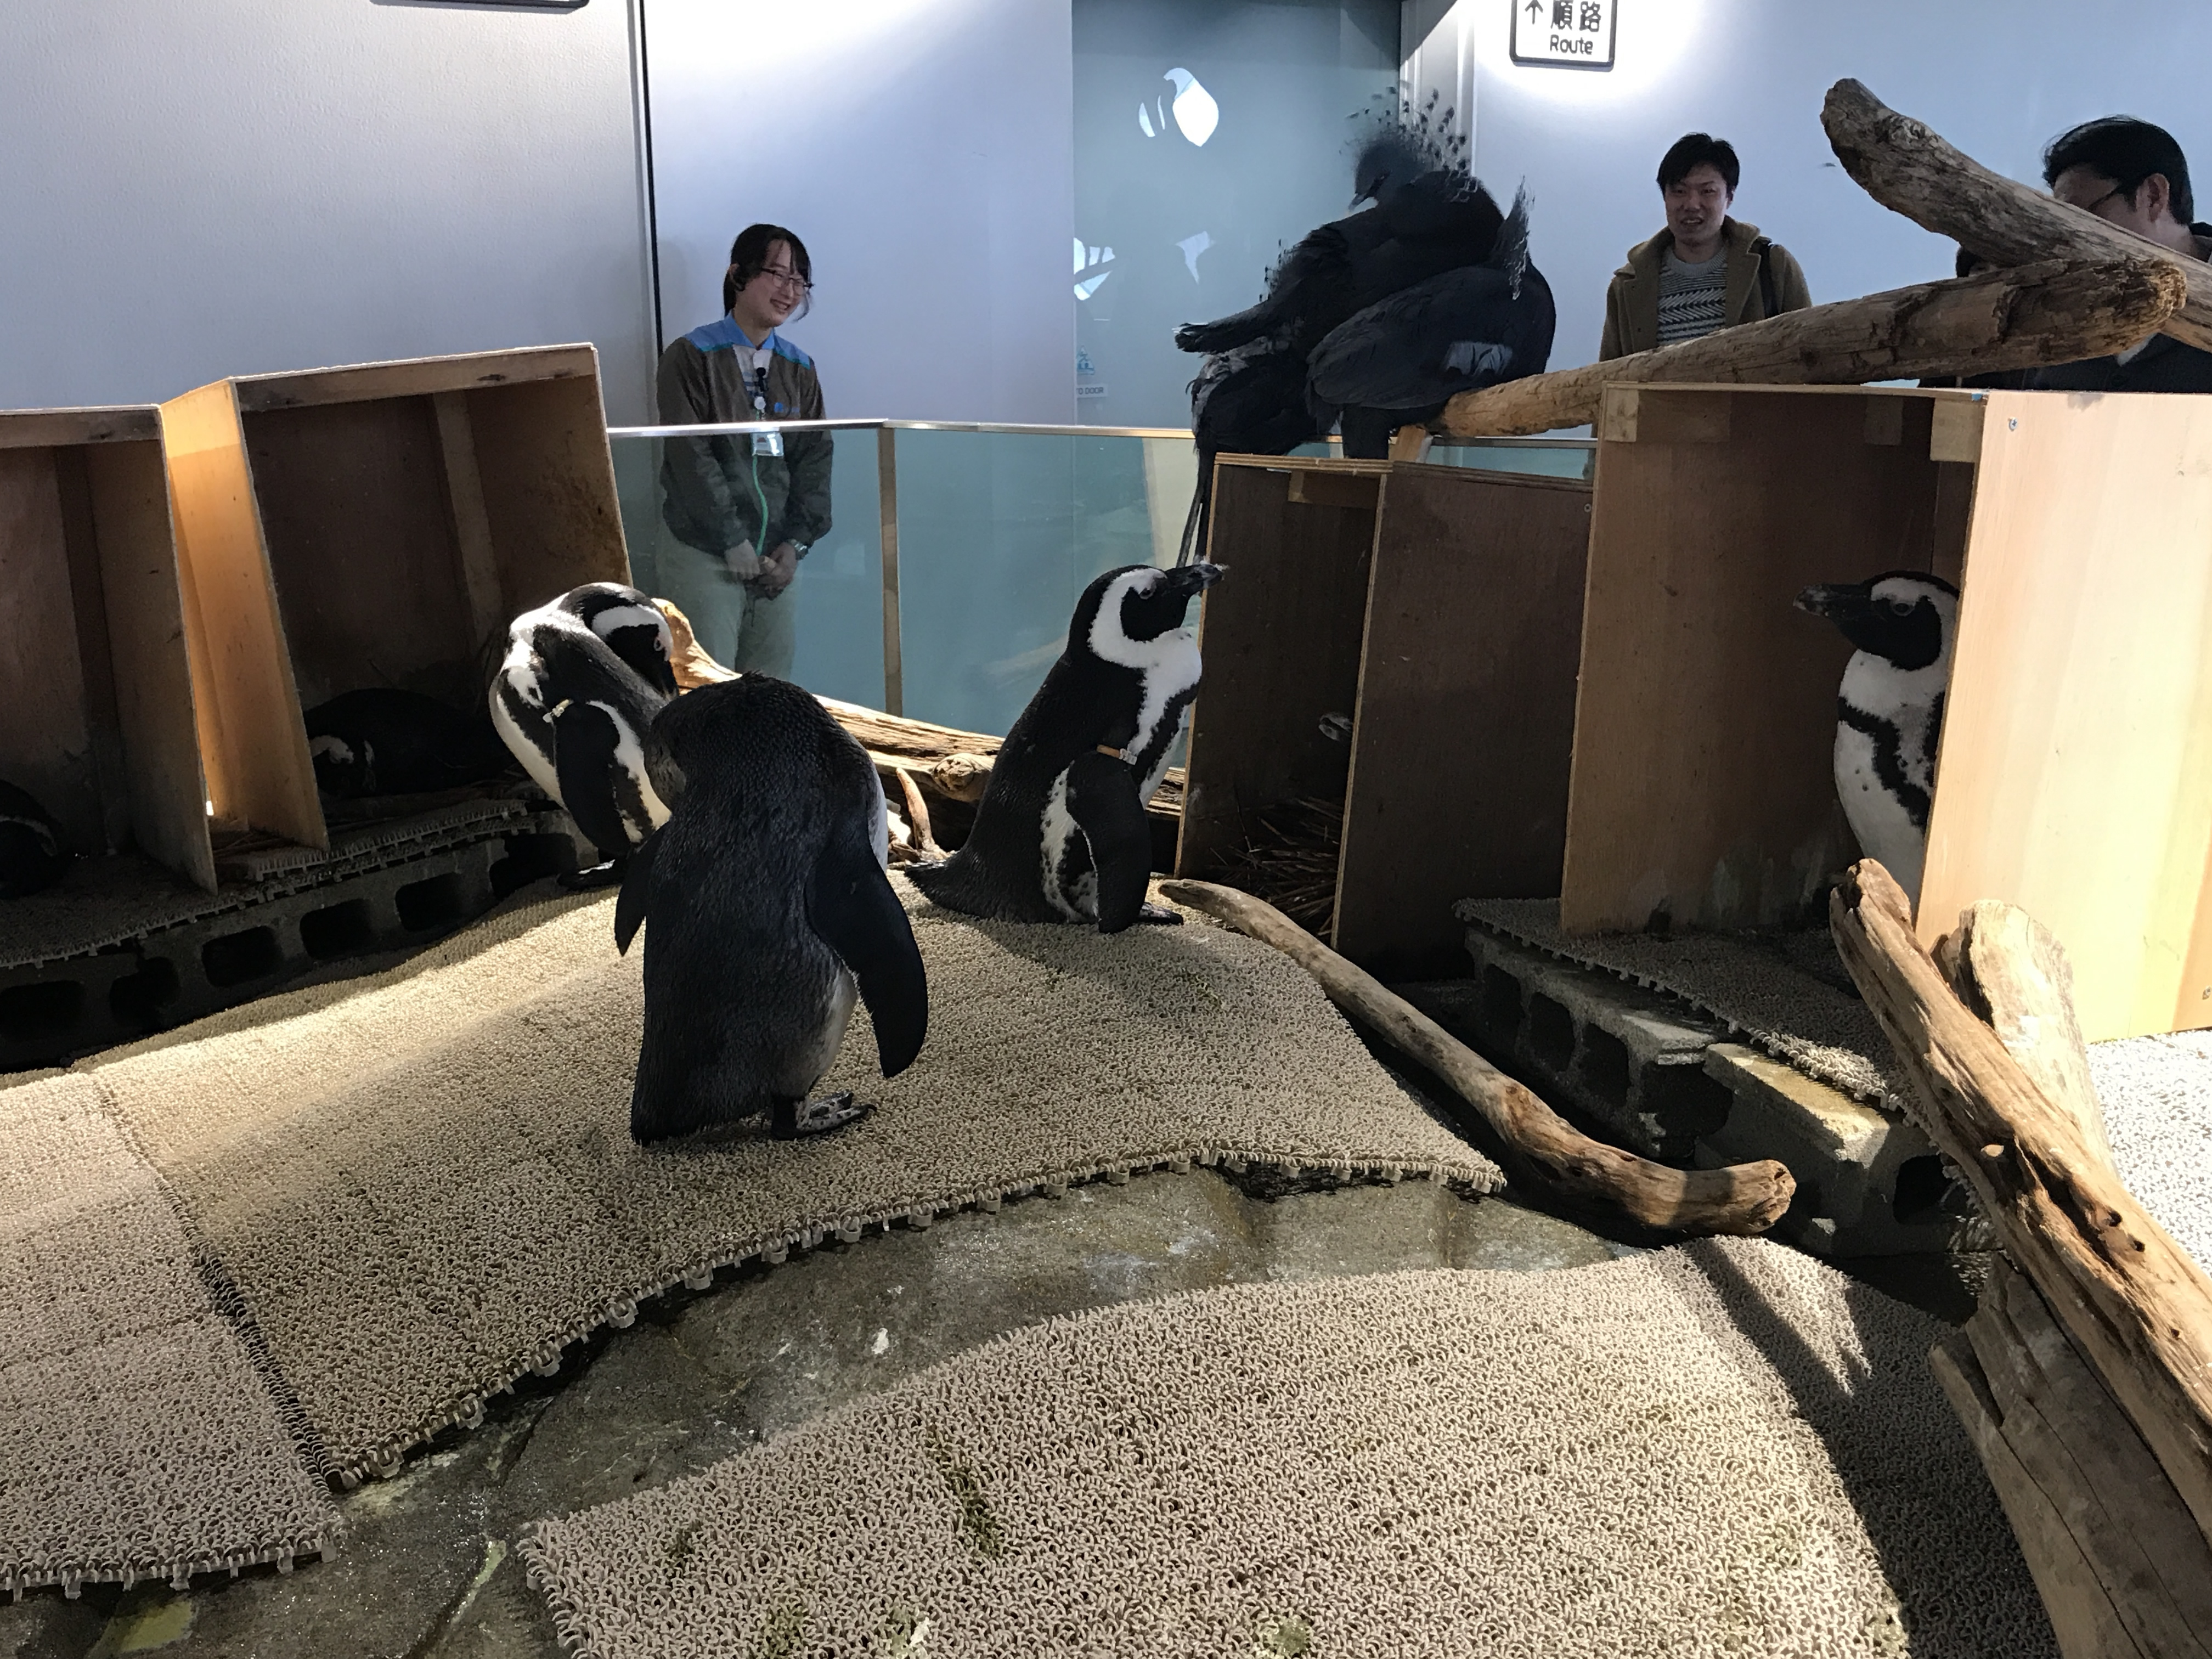 ニフレル(NIFREL) 大阪 吹田市 水族館 動物園 おすすめ情報や混雑状況